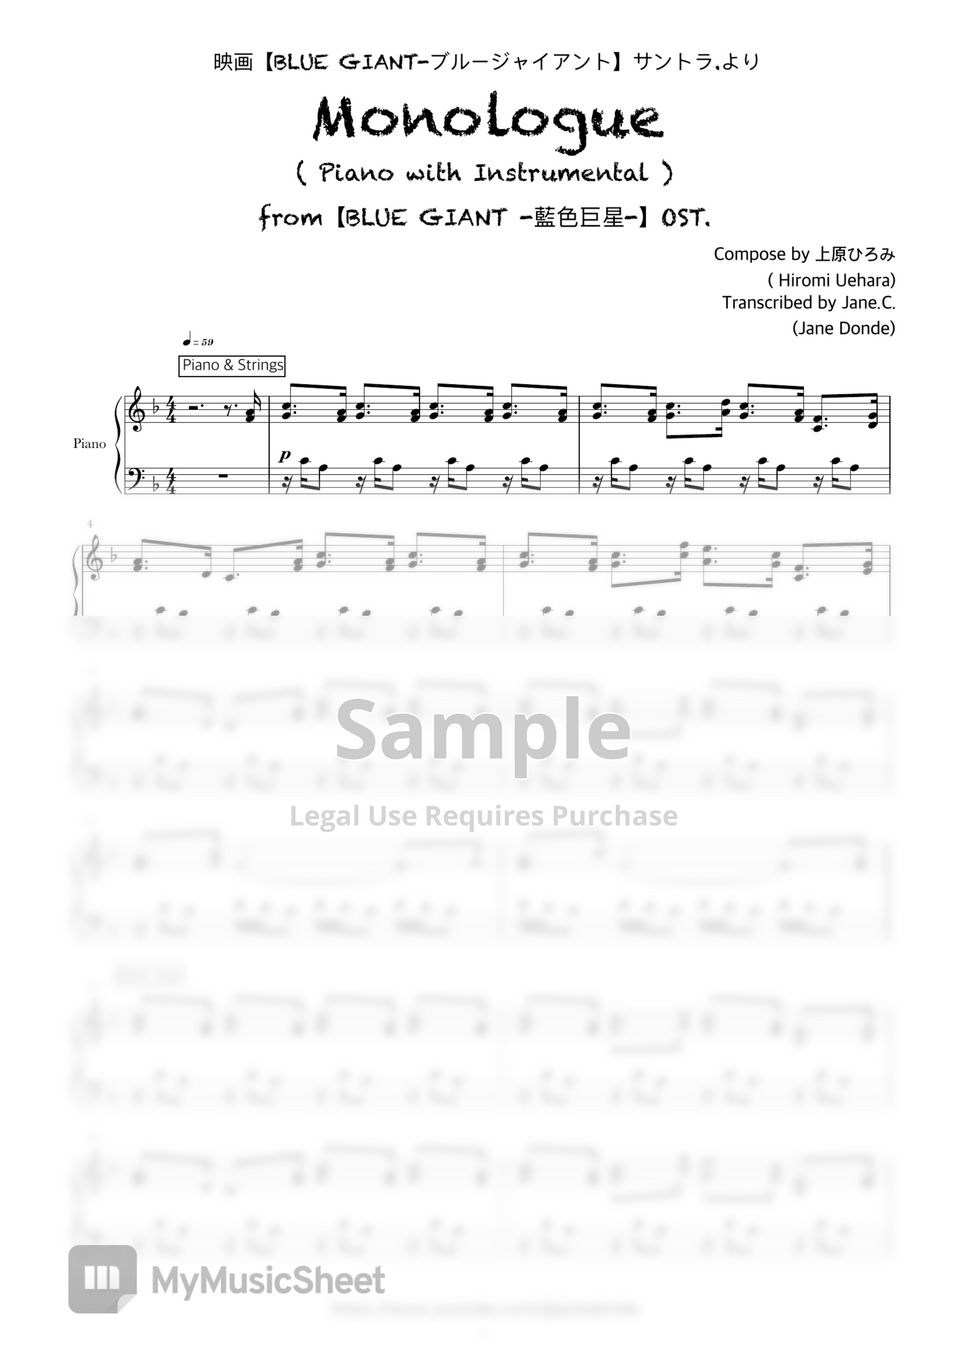 上原ひろみ(Hiromi Uehara) - 《 MONOLOGUE 》 (映画🎷【BLUE GIANT 】OST.) by  Jane.C.(Jane Donde)